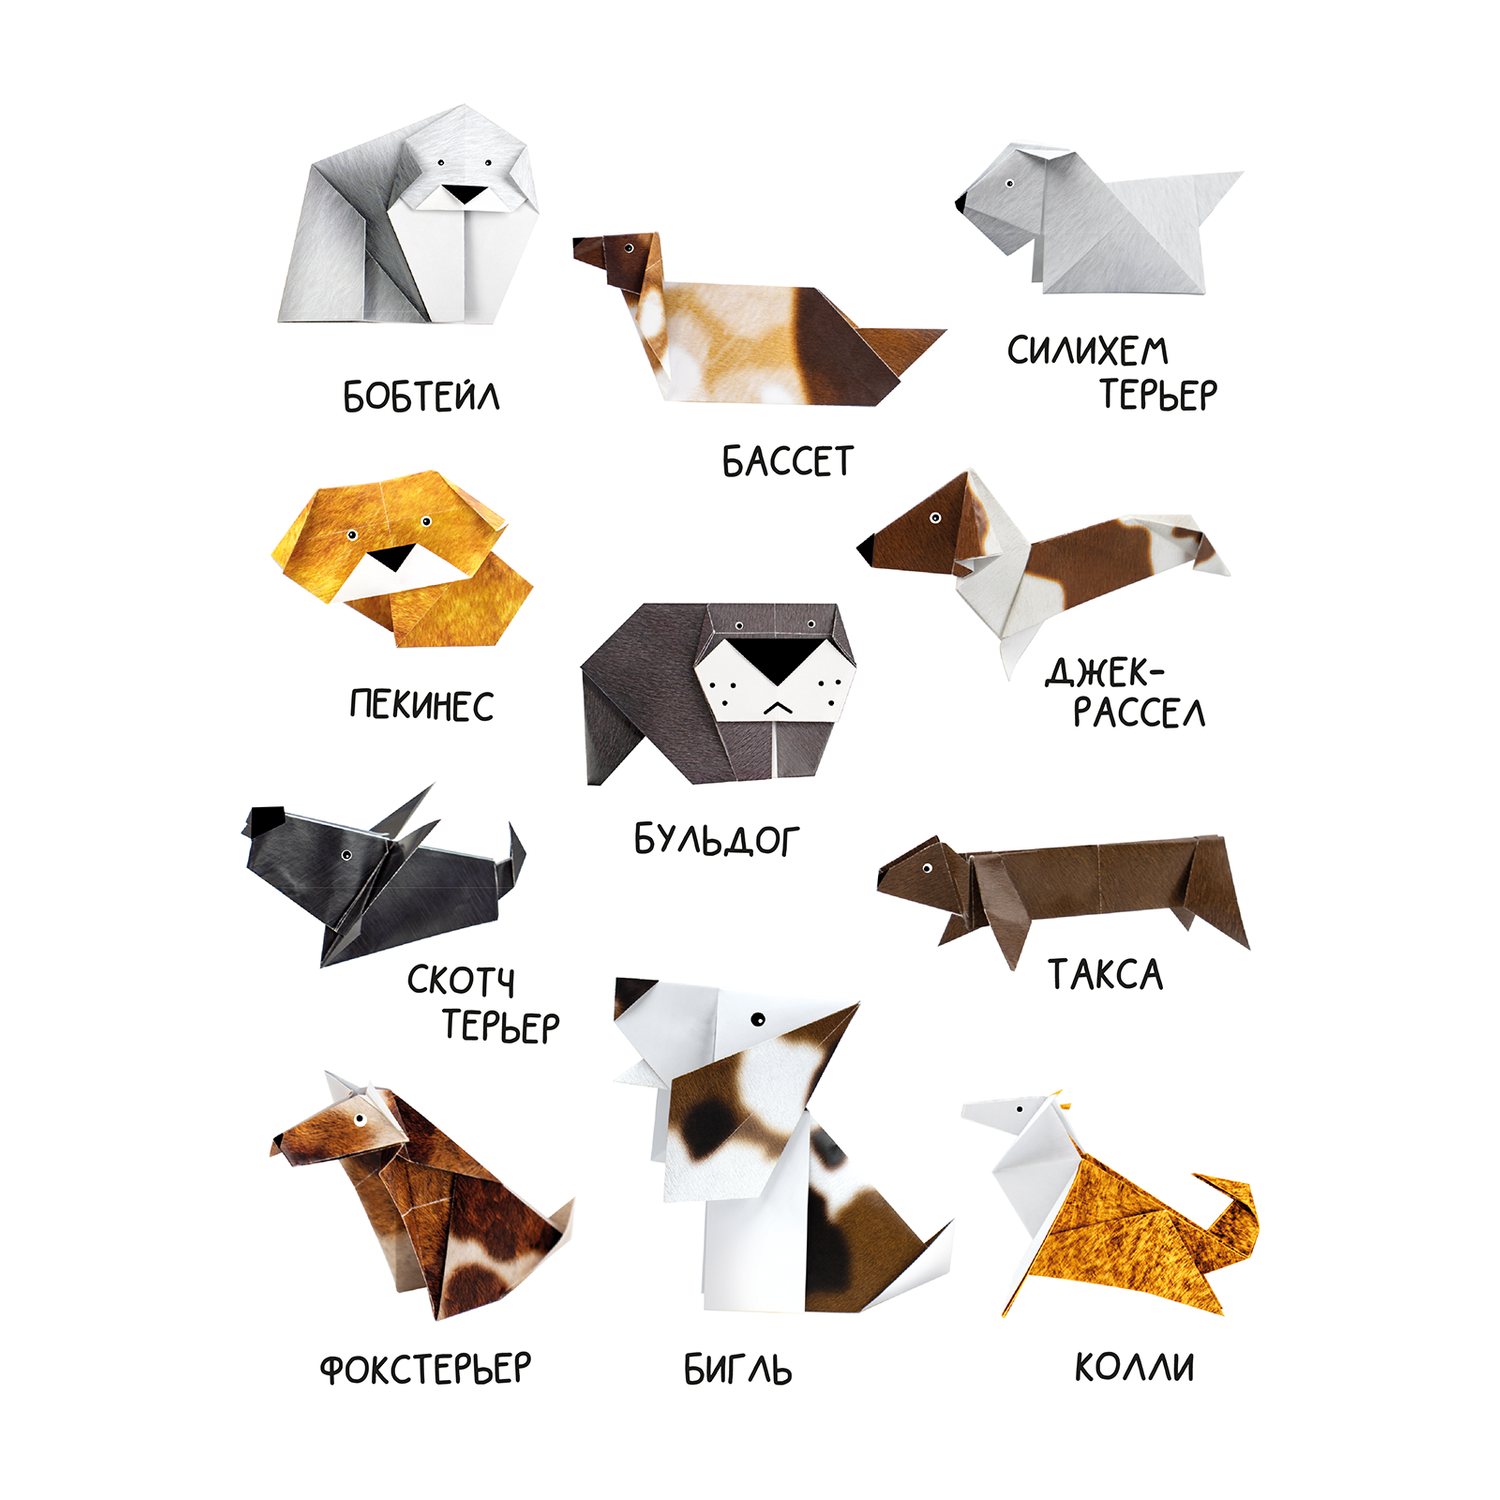 Оригами собака из бумаги своими руками